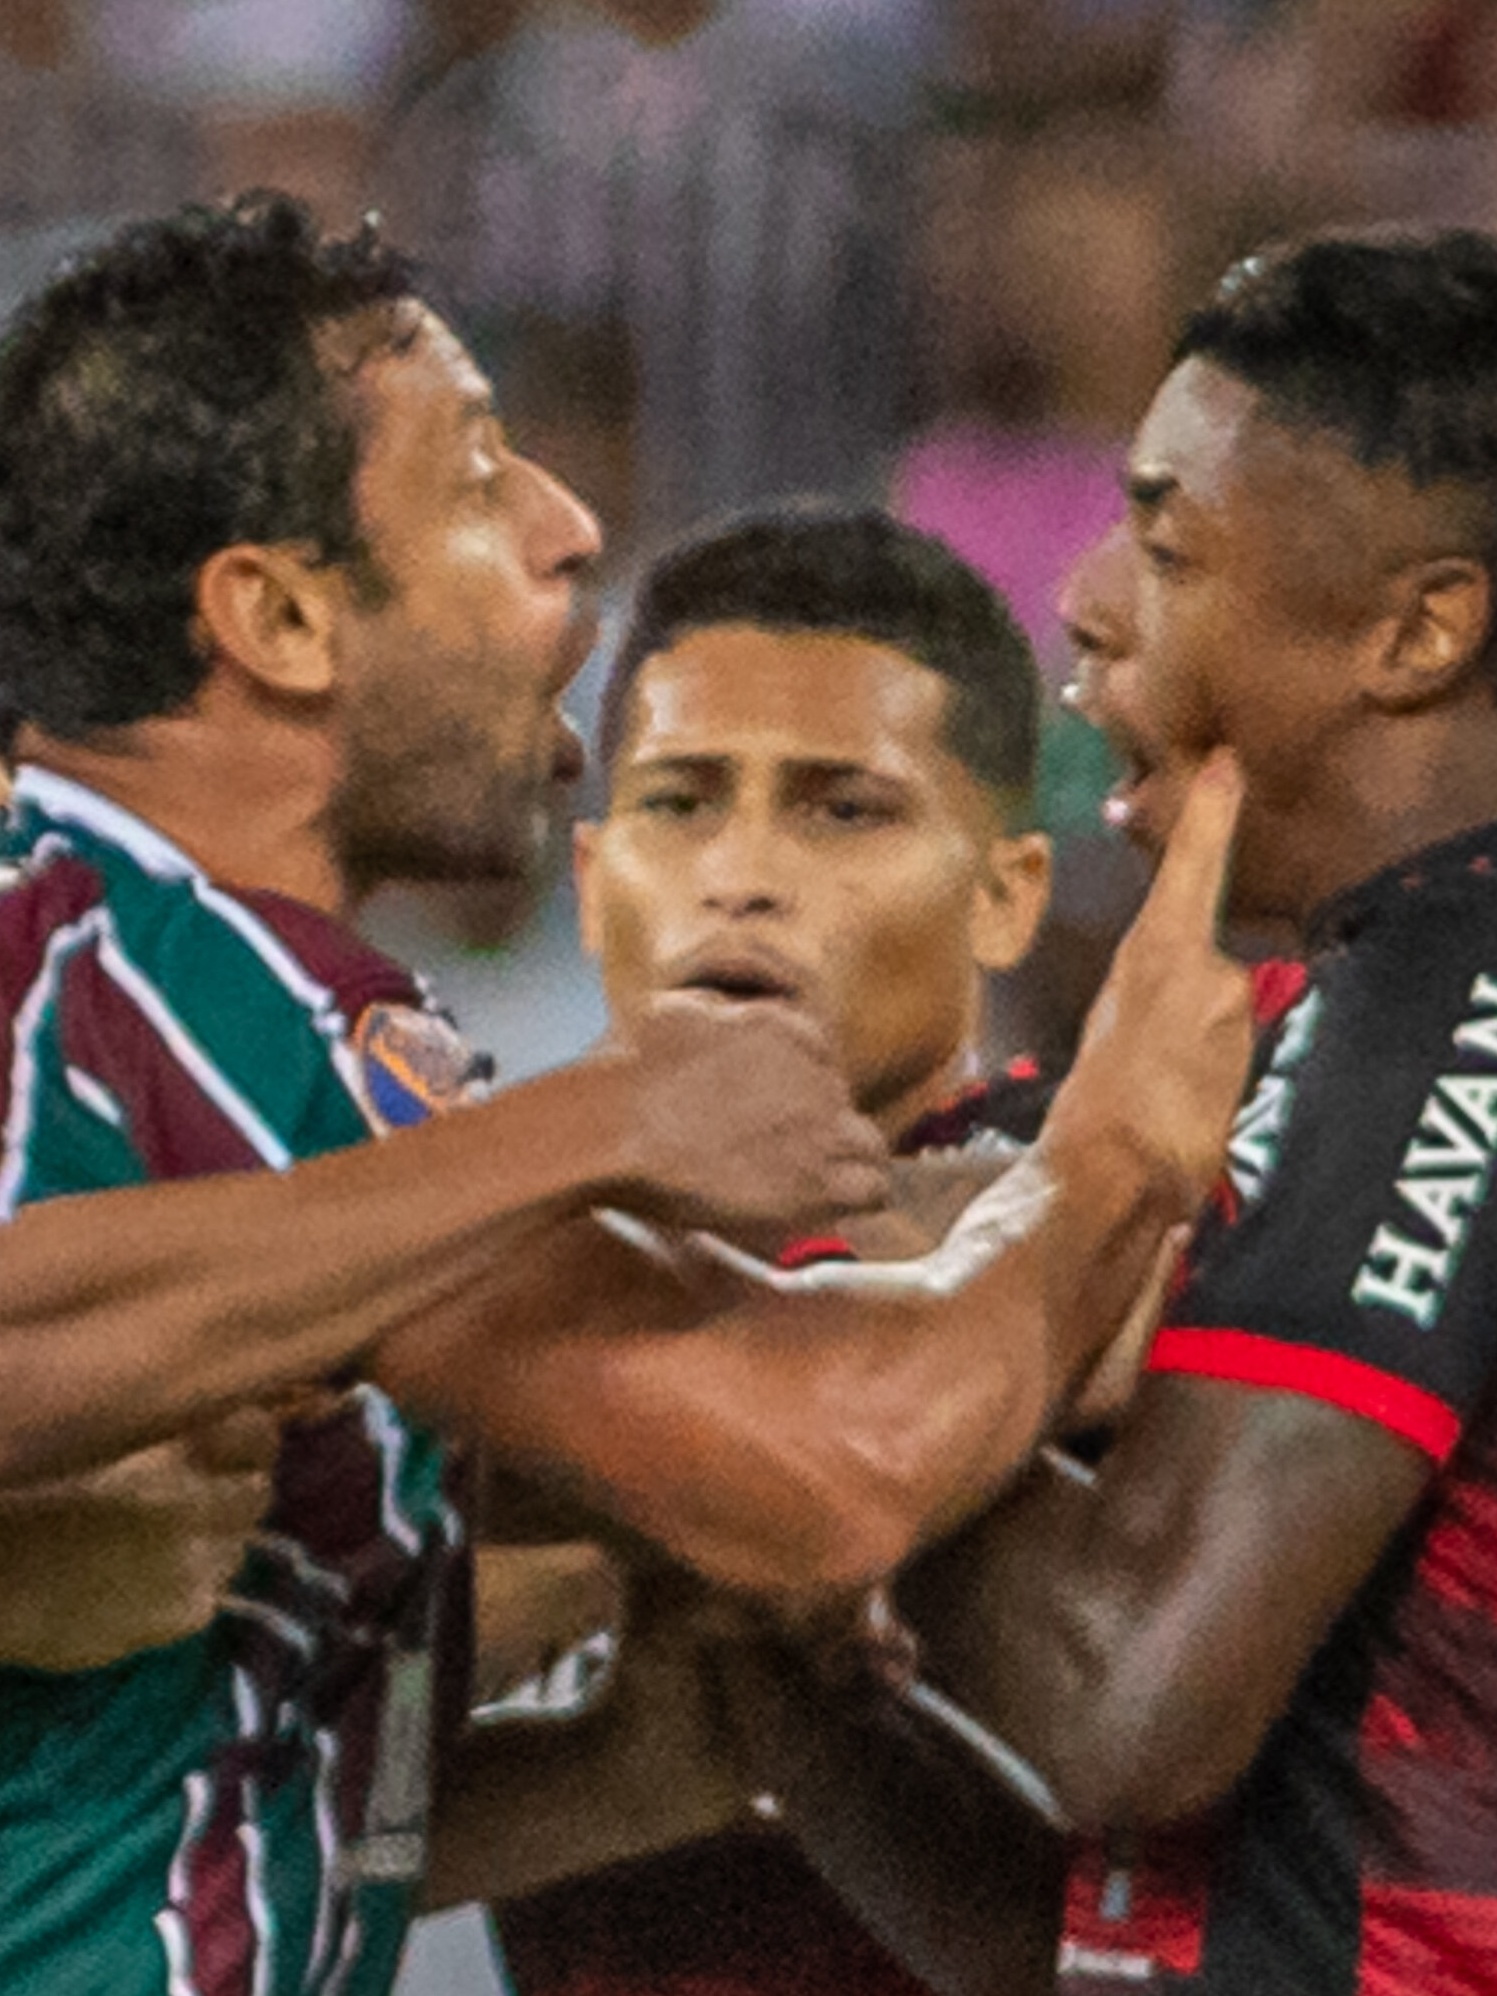 Com briga e seis expulsos no fim, Palmeiras e Flamengo empatam